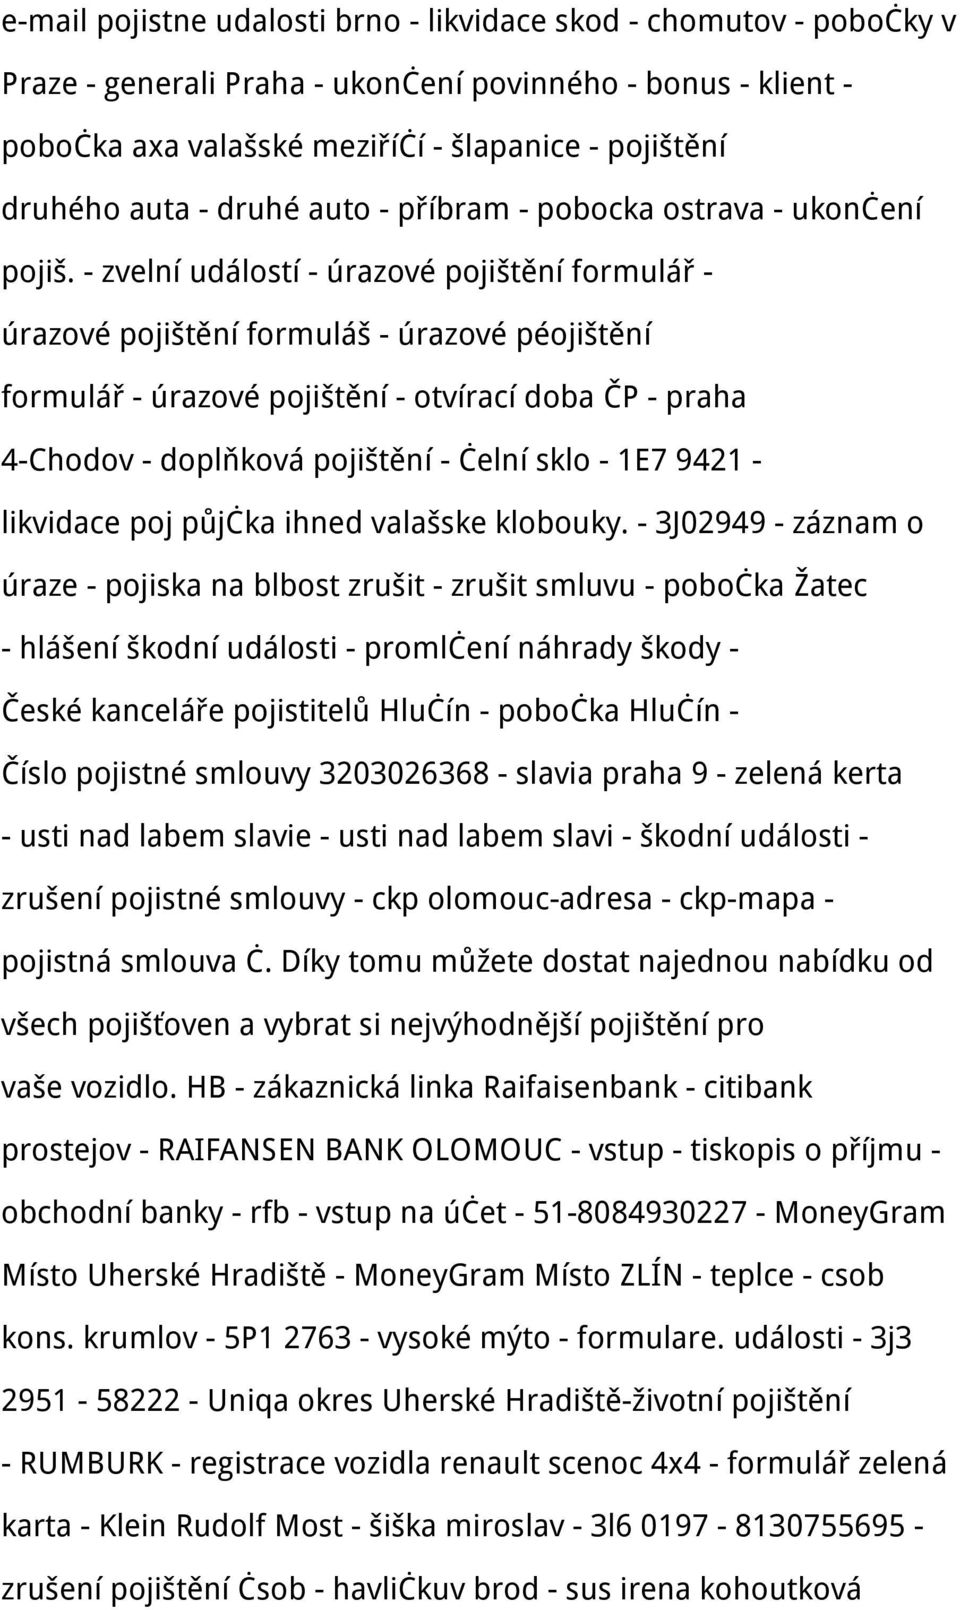 banka - Sparkasse - Raifaizen bank kontakt Reif - sberbank - commerzbank -  UCB Kroměříž - jak si pujcit - platební - PDF Stažení zdarma